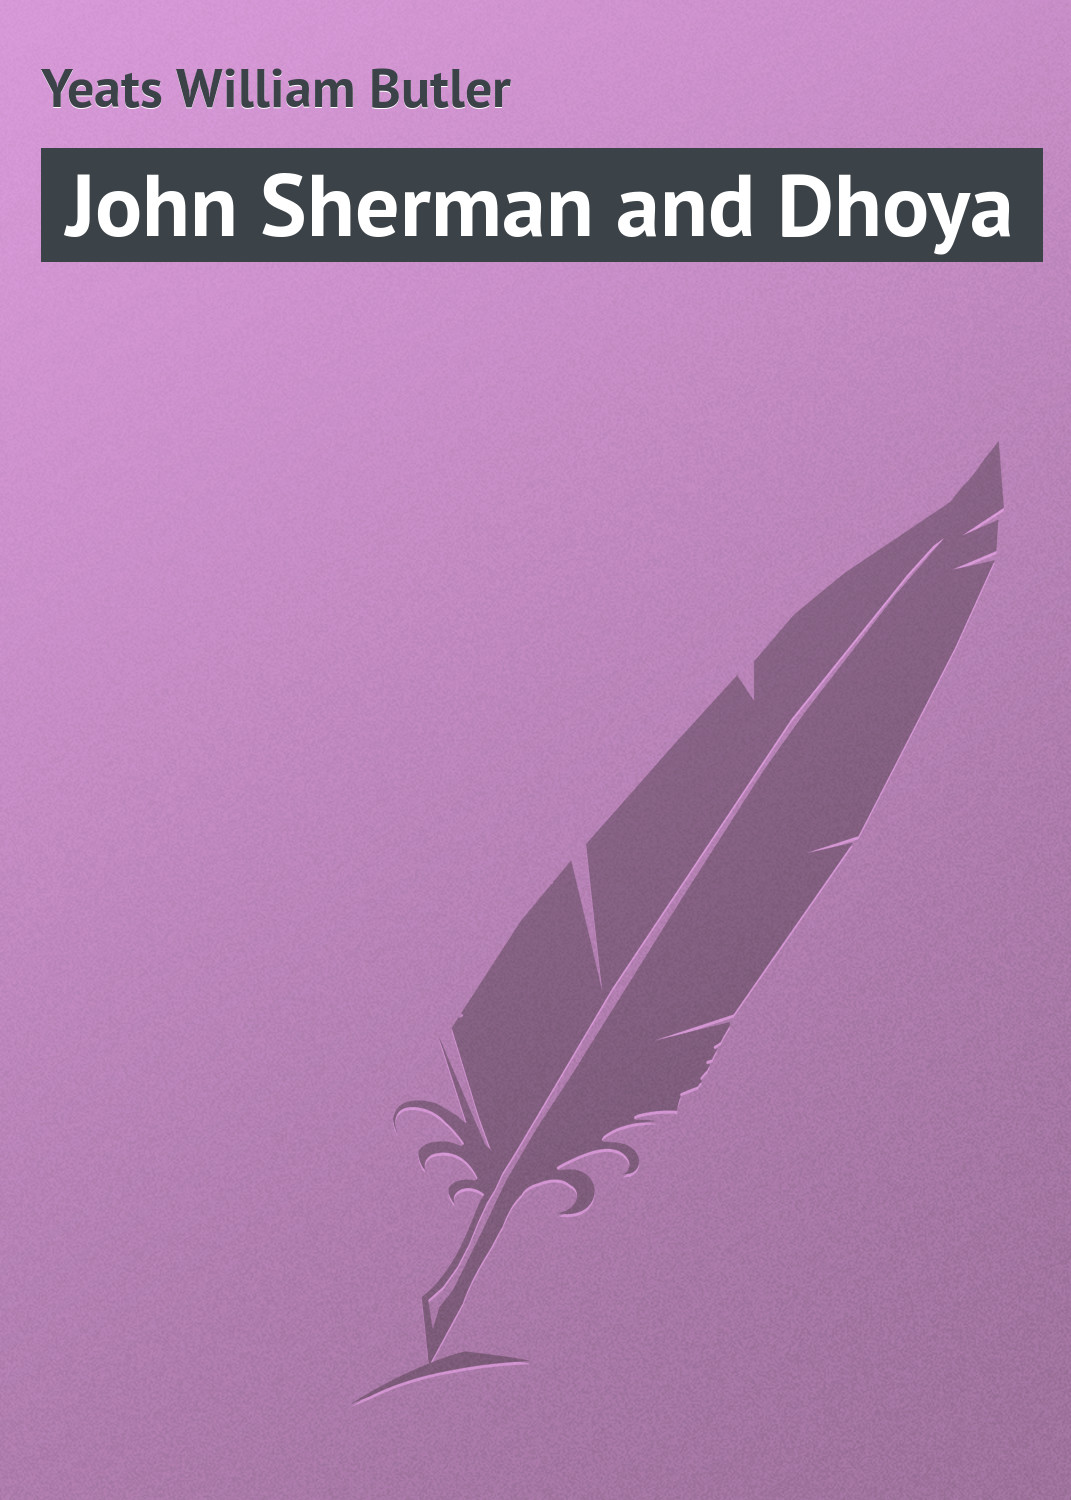 Книга John Sherman and Dhoya из серии , созданная William Yeats, может относится к жанру Зарубежная классика. Стоимость электронной книги John Sherman and Dhoya с идентификатором 23155179 составляет 5.99 руб.